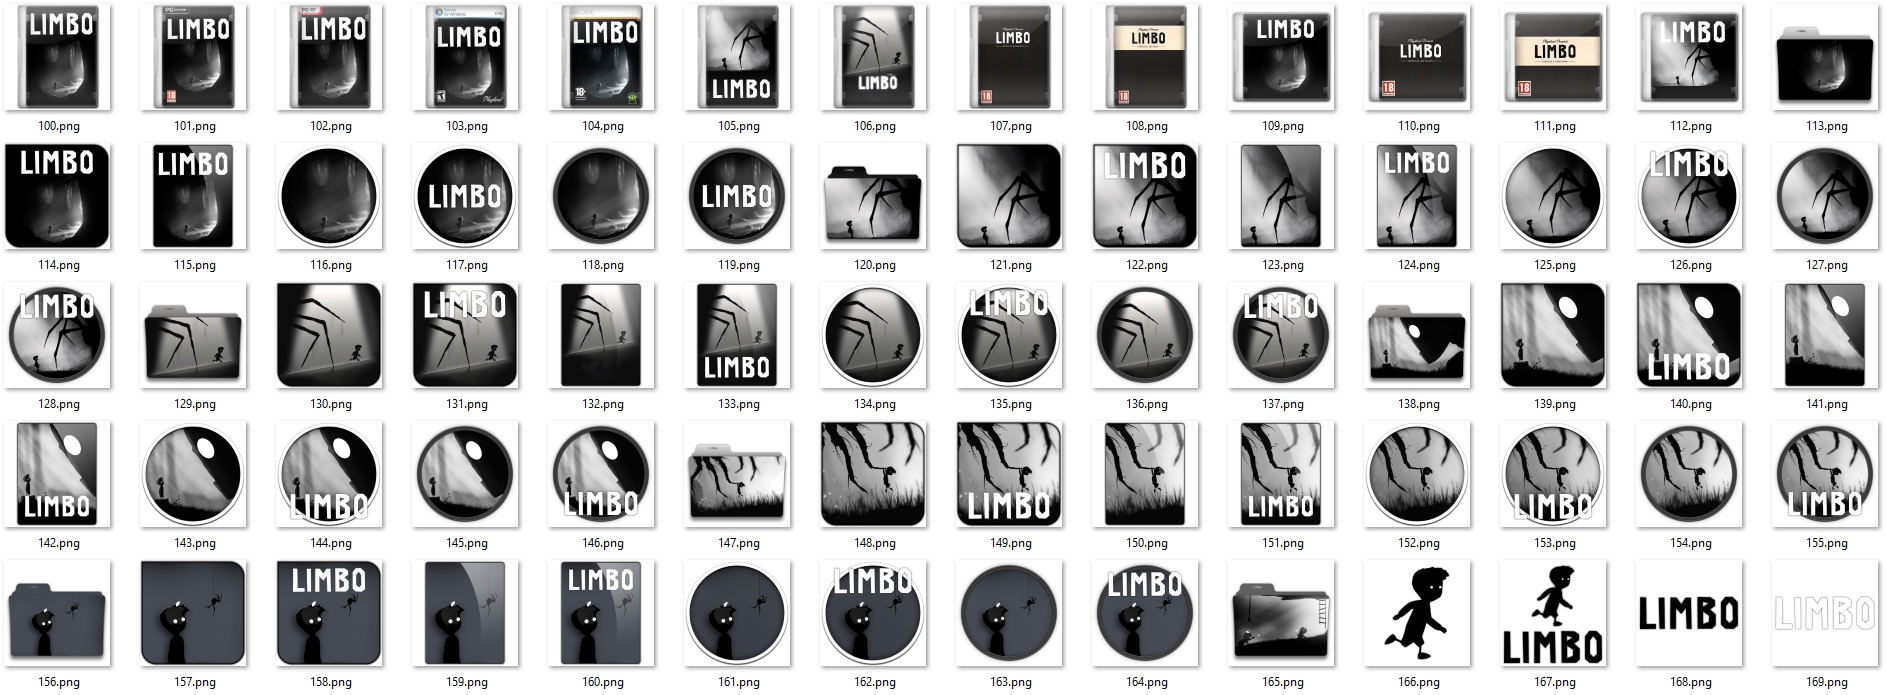 Иконки из набора к игре Limbo